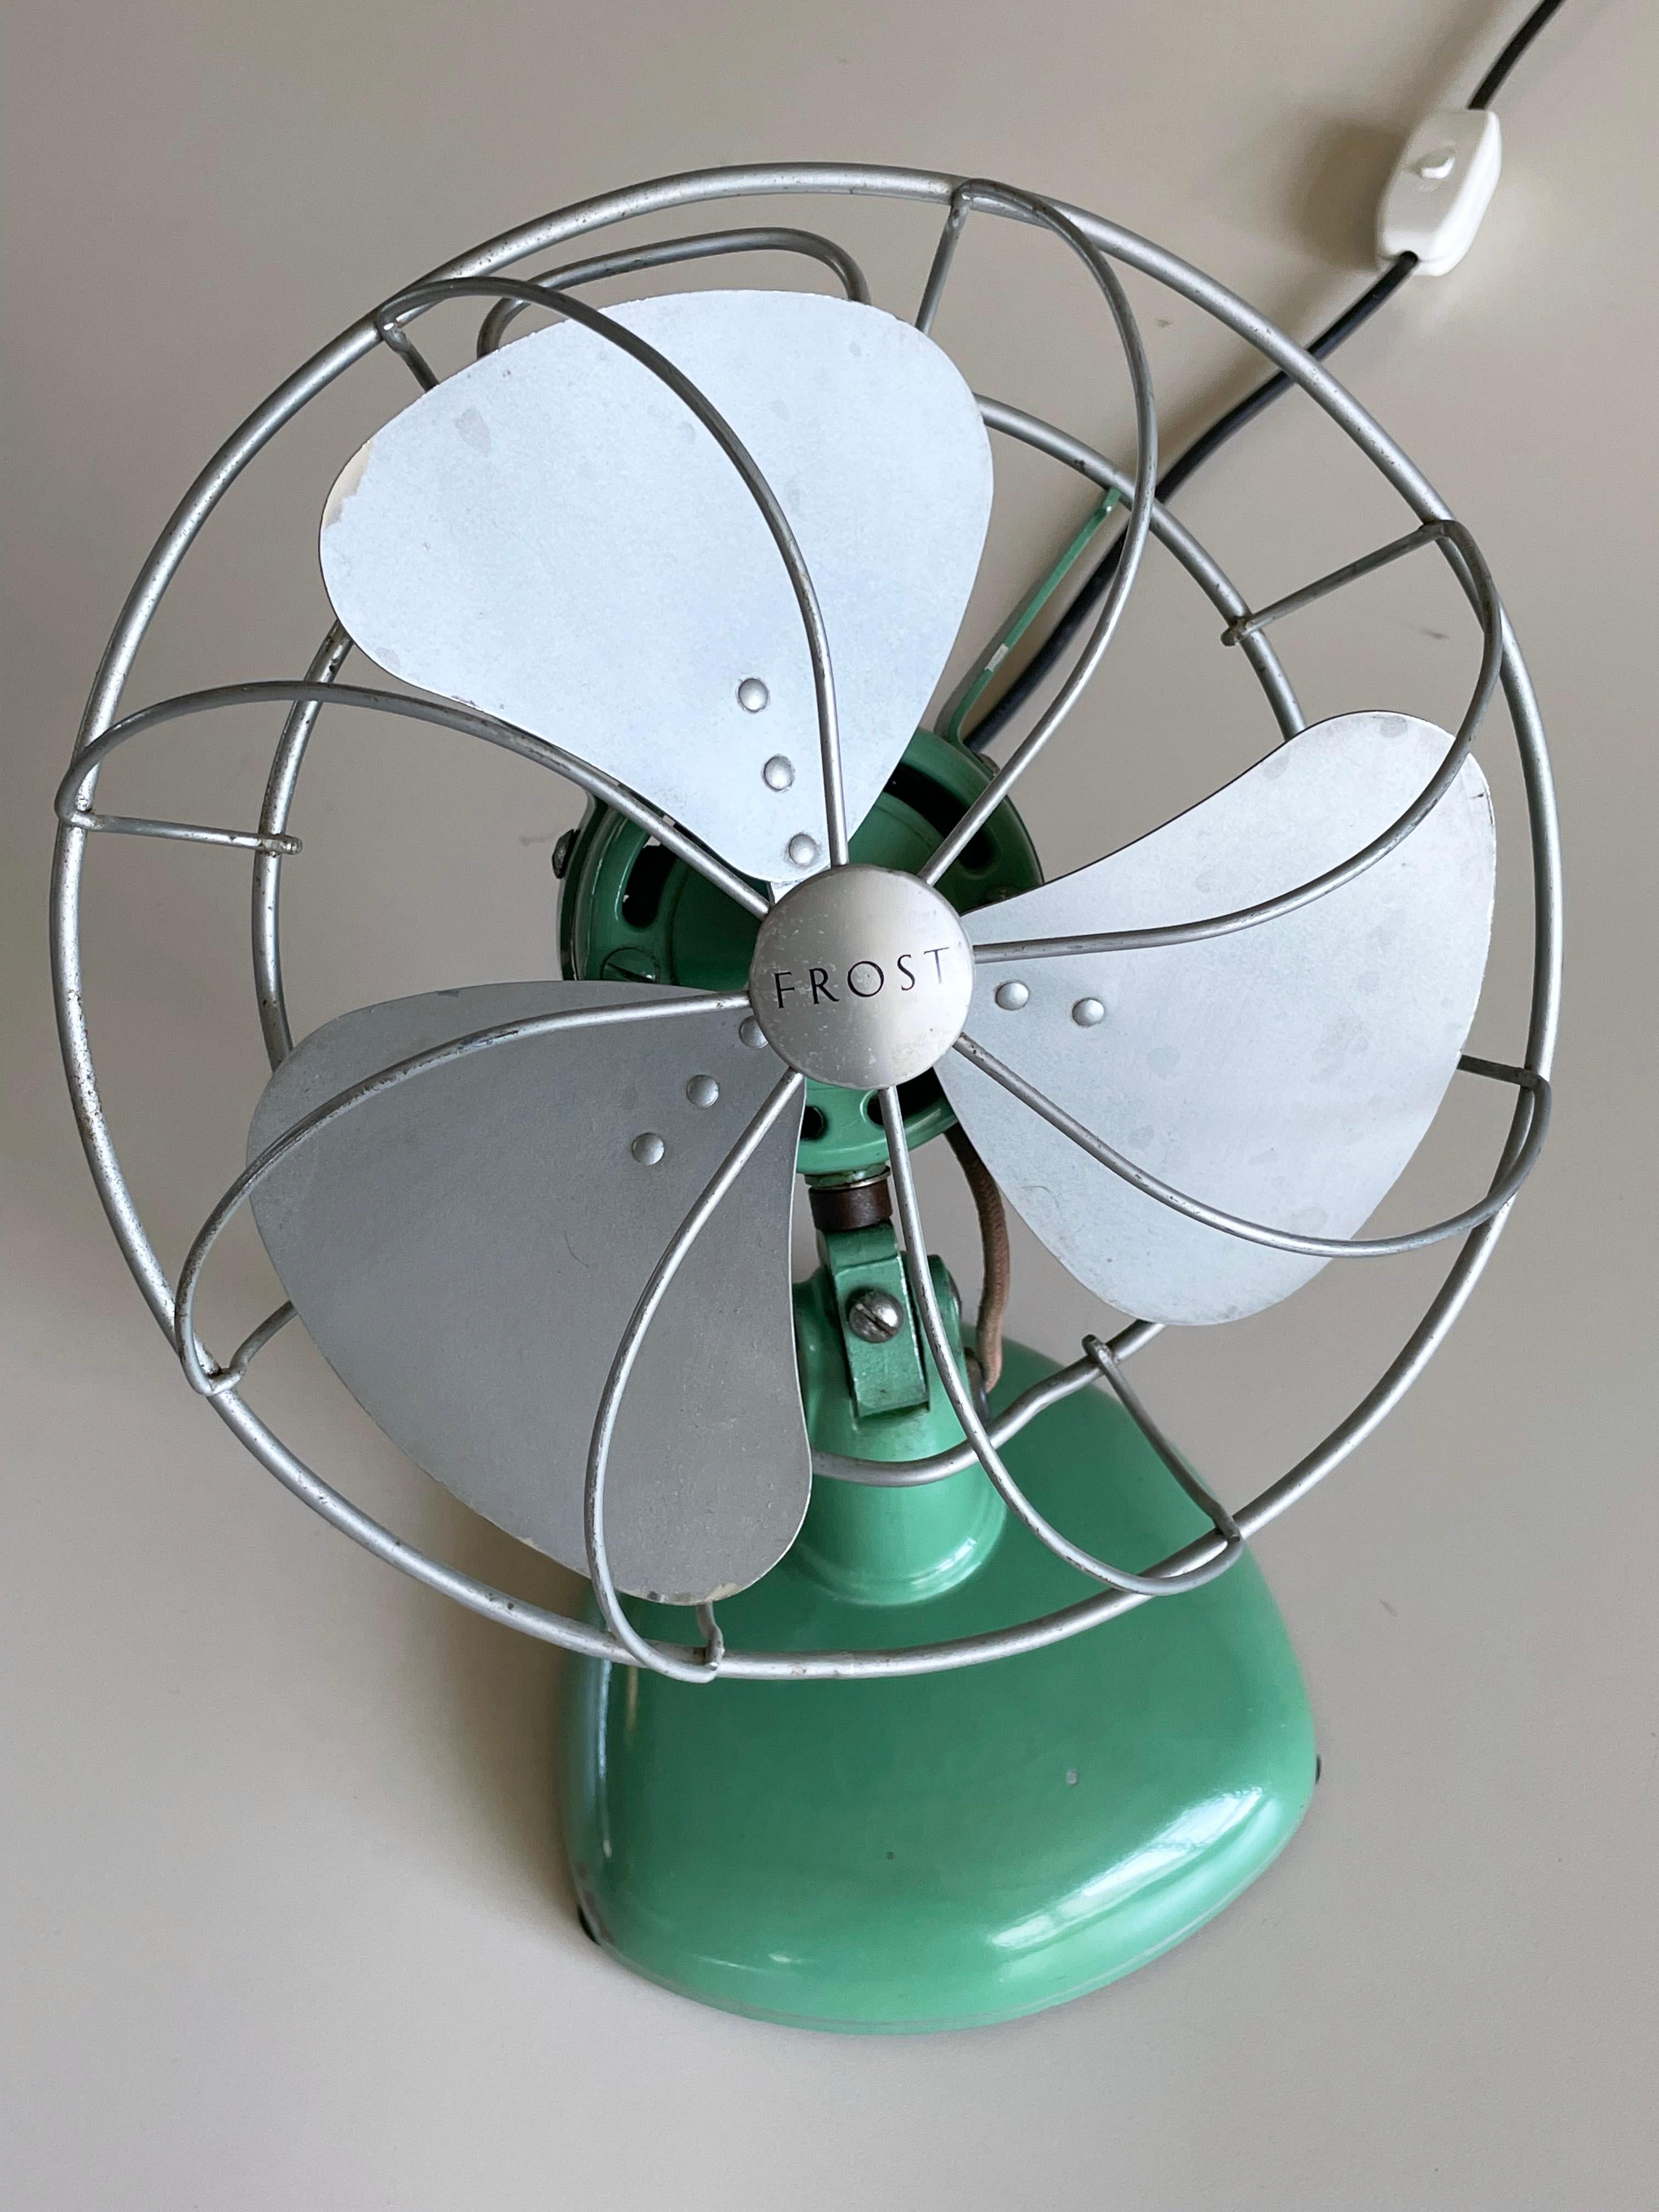 1950’s FROST triple blade oscillating desk fan / ventilator For Sale 5